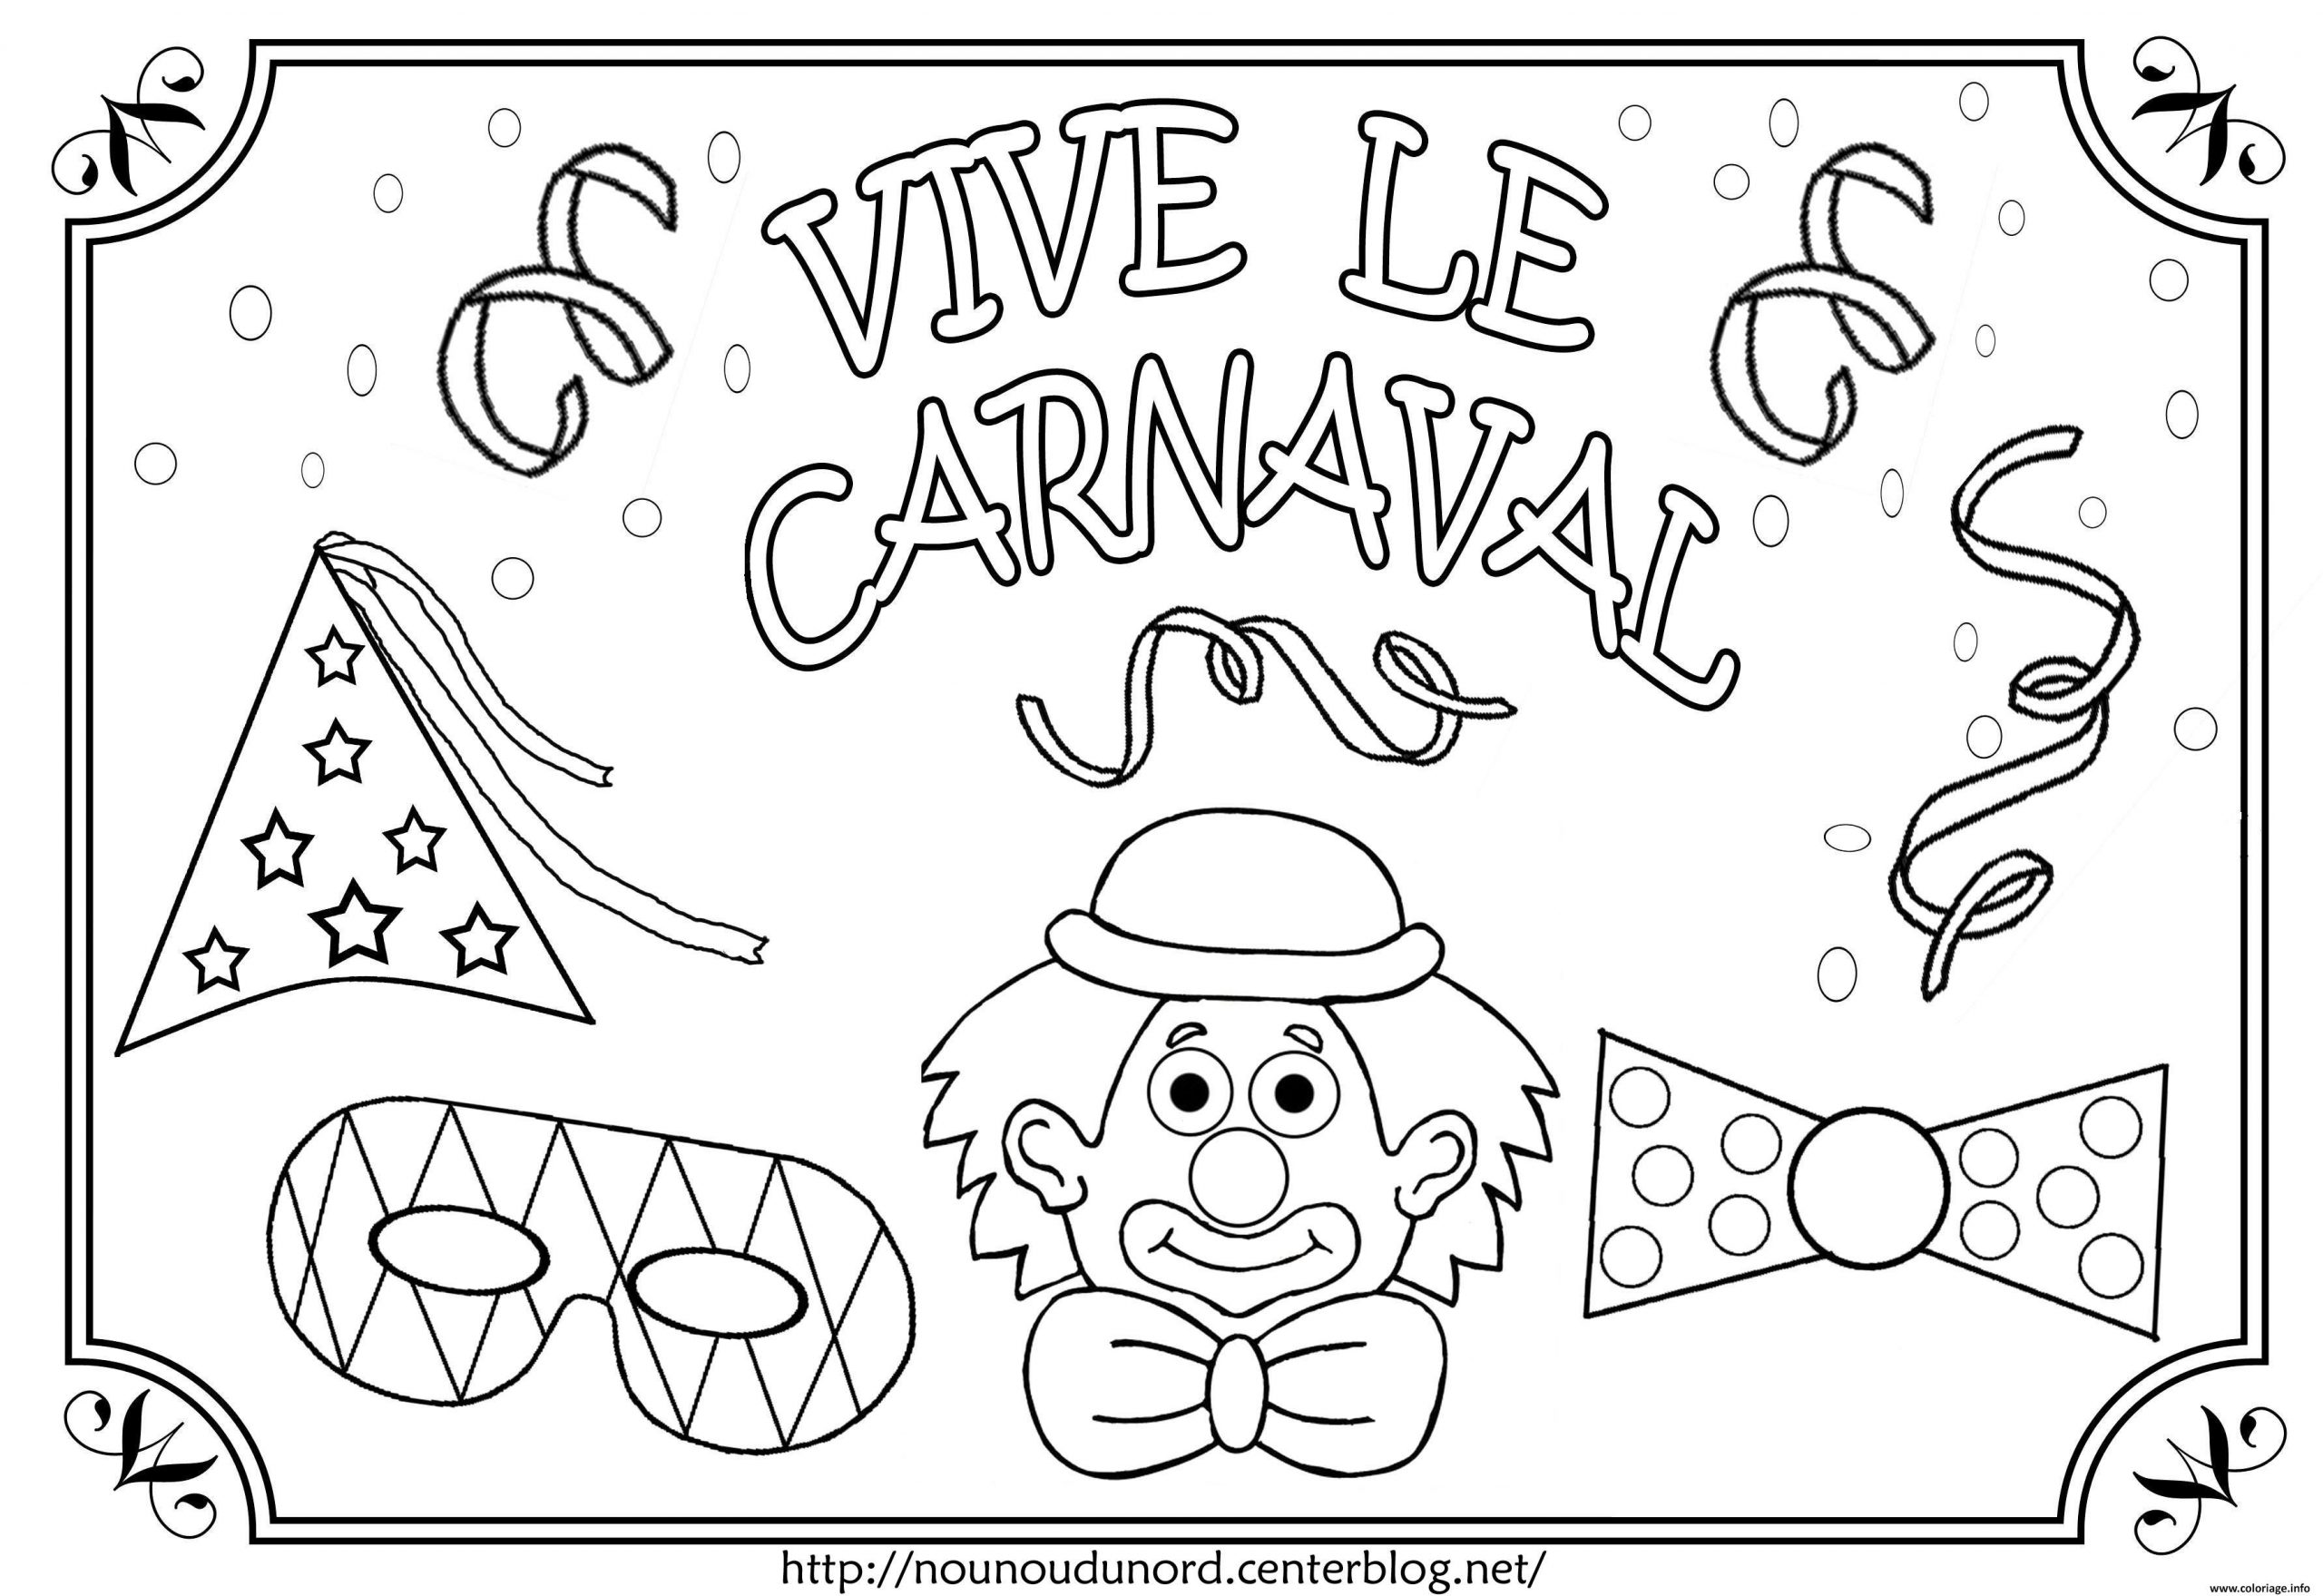 Coloriage Vive Le Carnaval Dessin tout Coloriage Masque Carnaval 